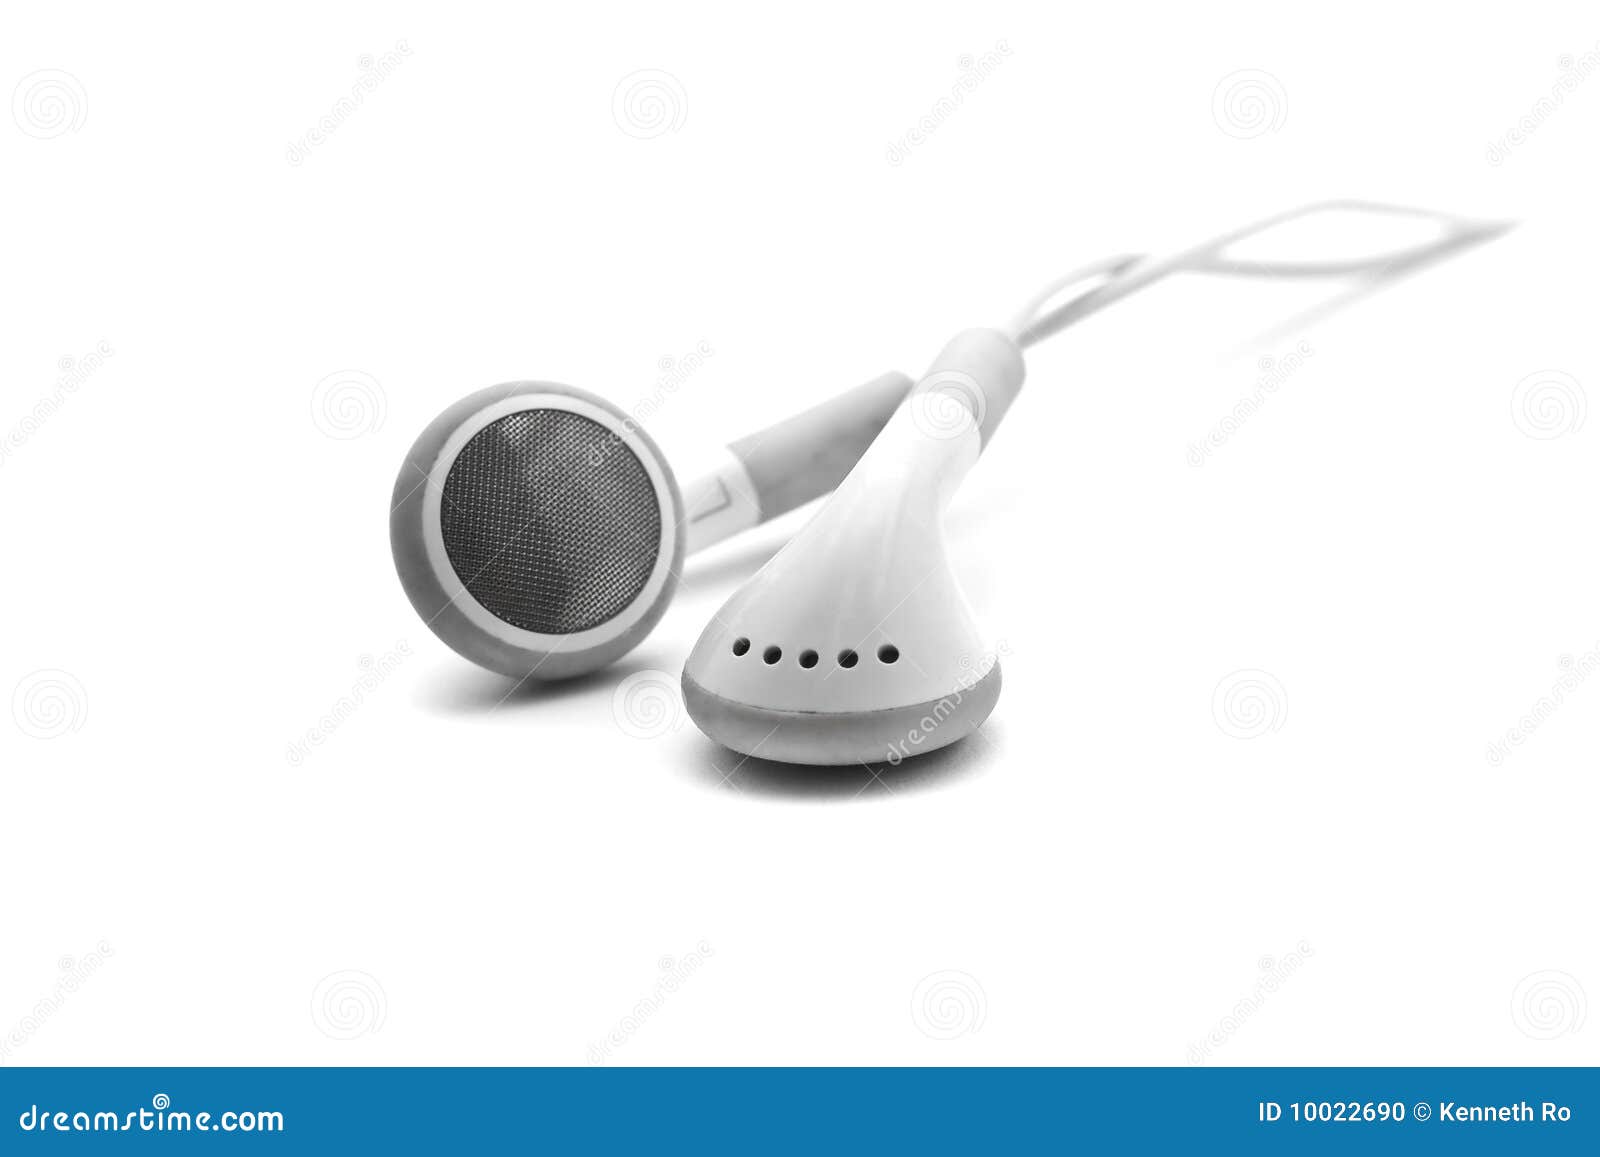 ipod earphone